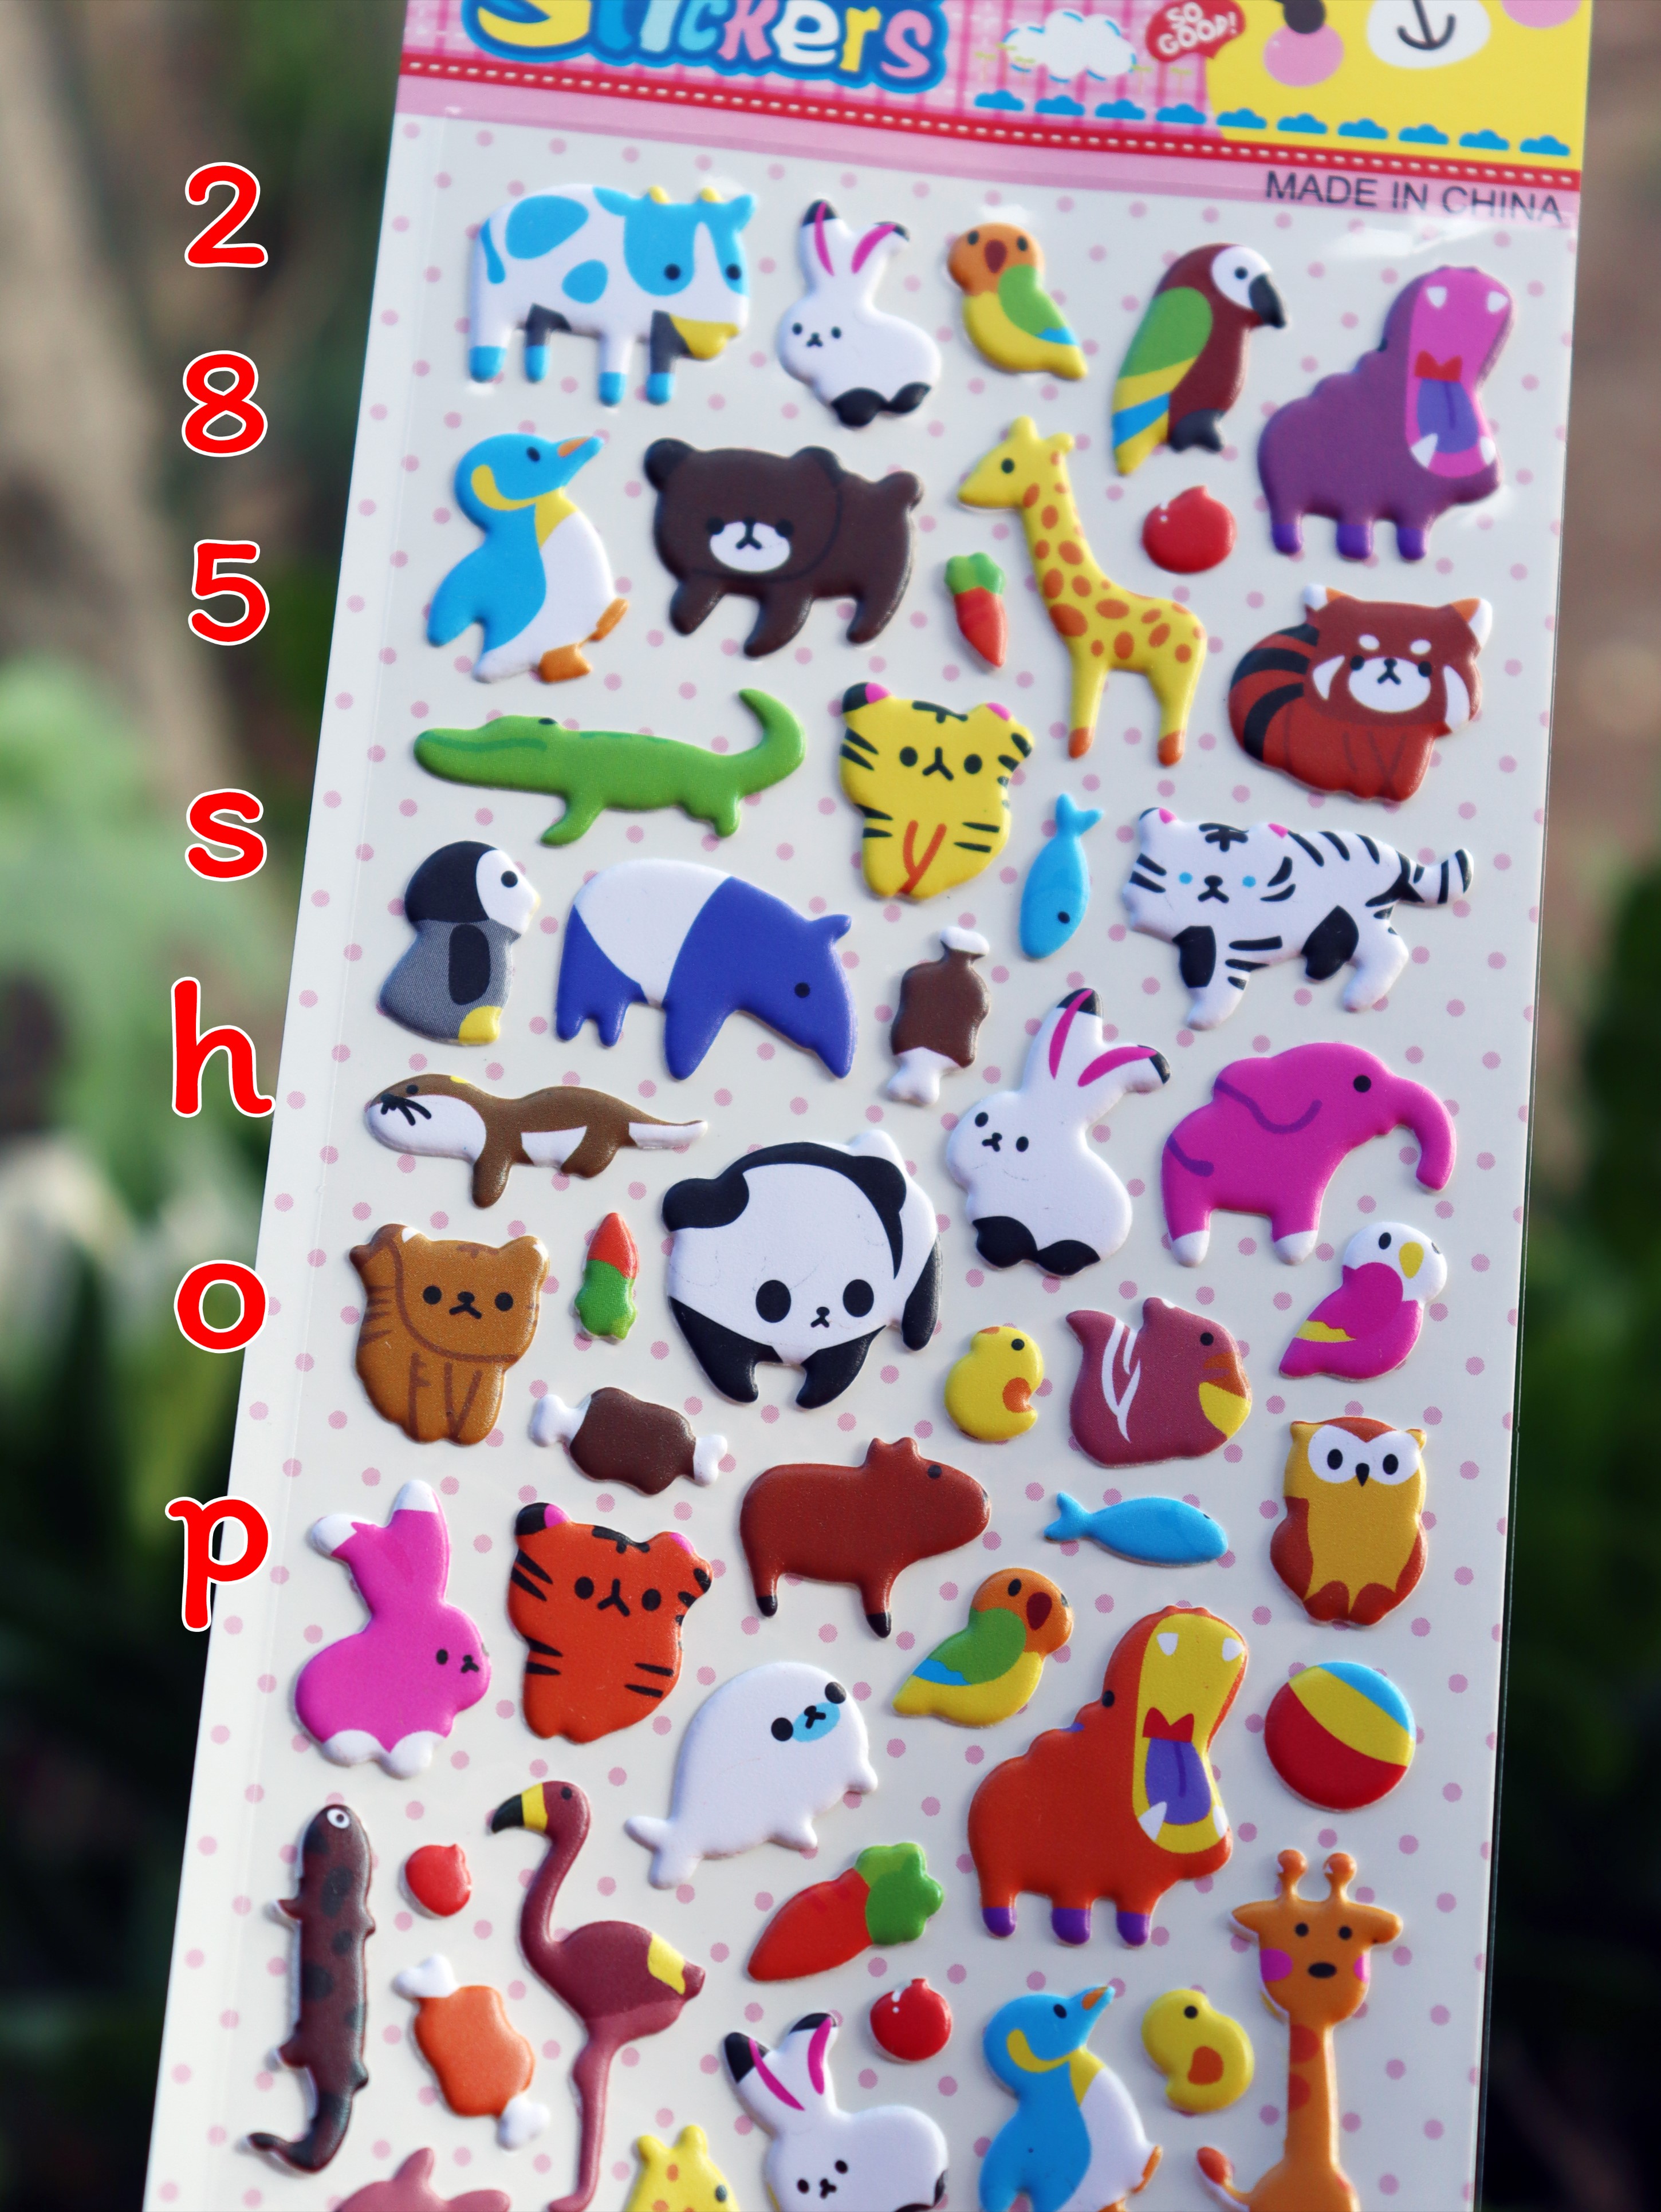 สติ๊กเกอร์นูนเกาหลี 3D เกรดเอ ขนาด 10x24 cm สีสวยลายน่ารัก Kids Stickers 3D PVC Korea สินค้าพร้อมส่ง สินค้าในประเทศไทย